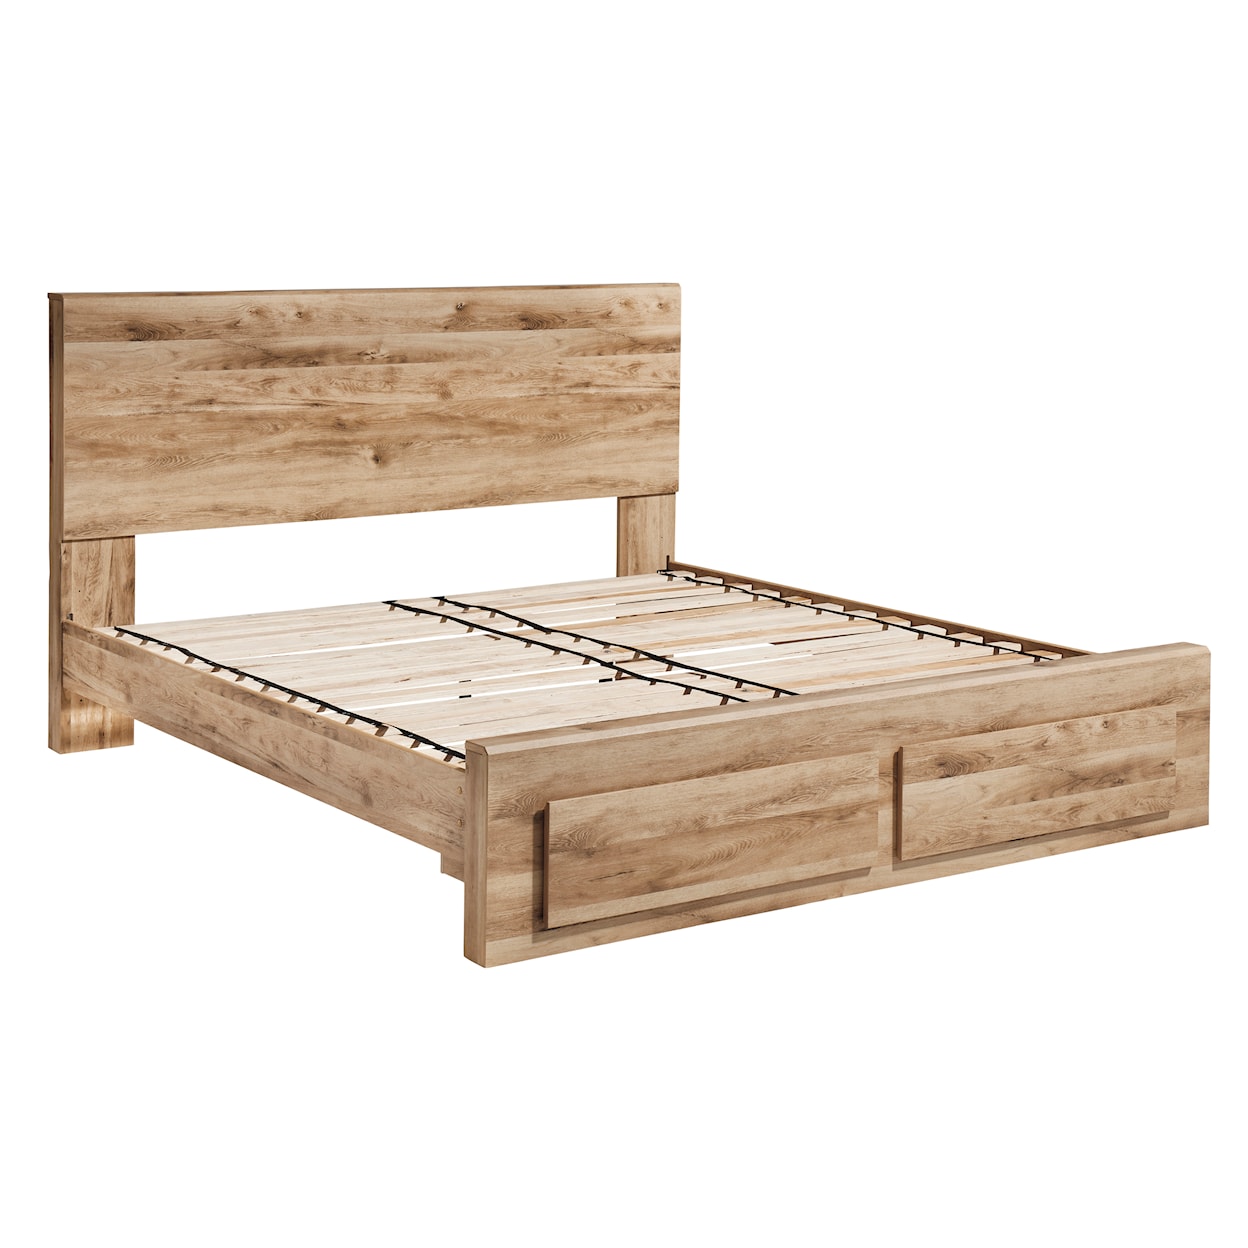 Ashley Furniture Signature Design Hyanna Queen Panel Storage Bed